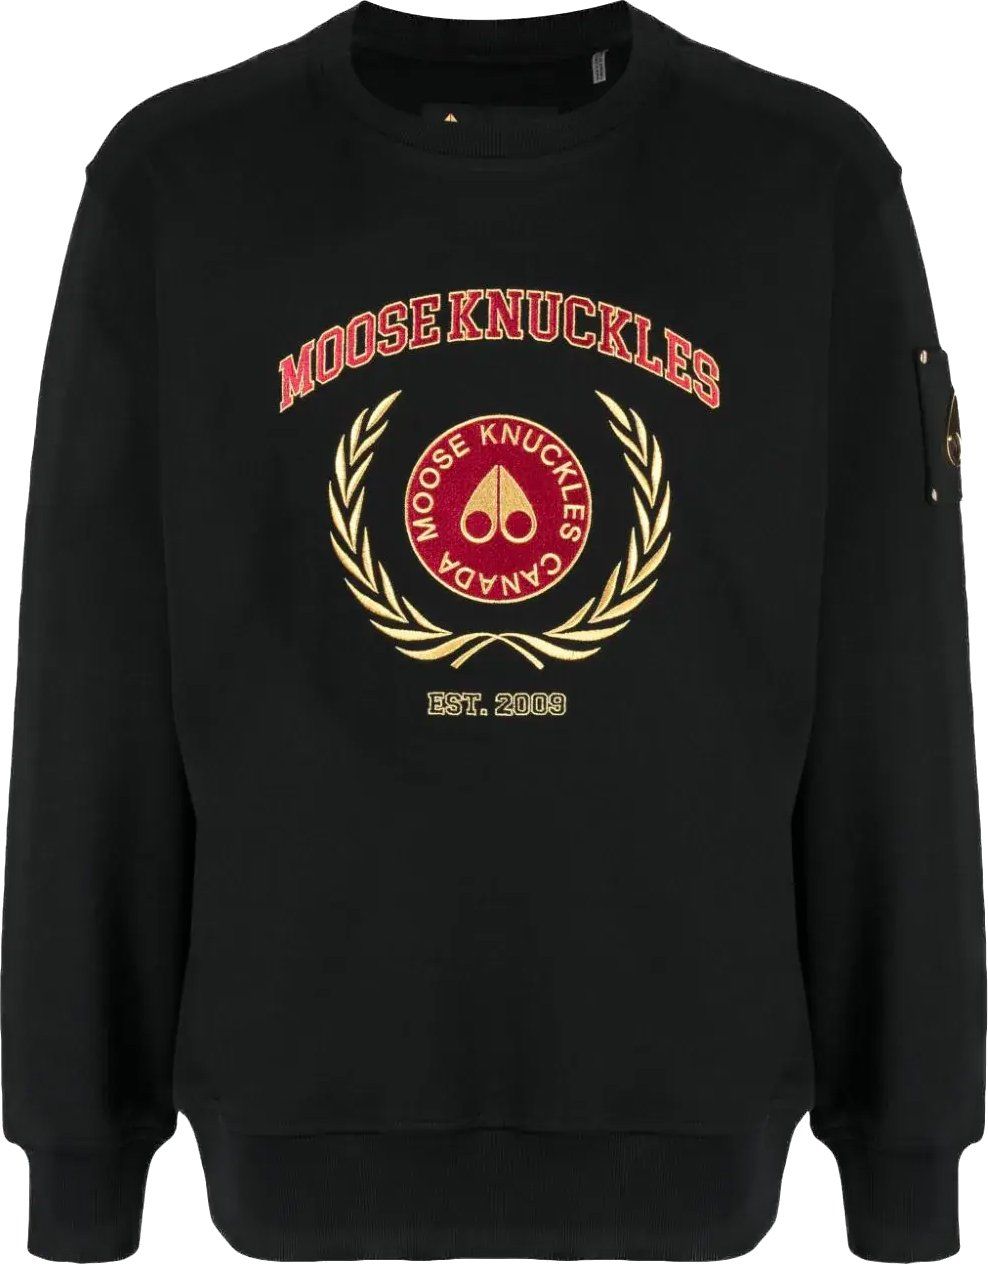 Moose Knuckles Cooledge Crewneck Black Gold Zwart